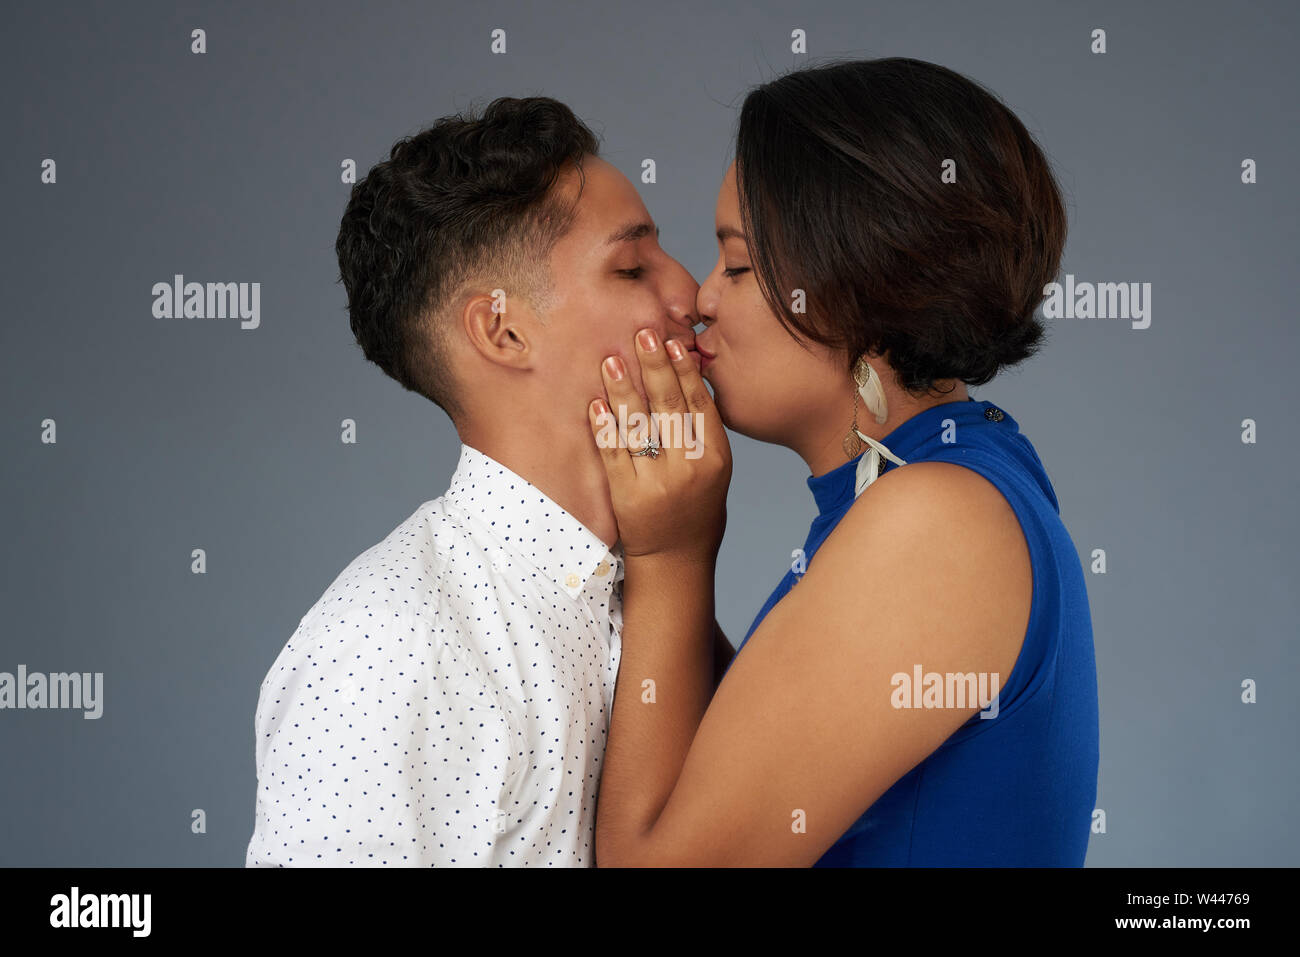 Baiser de jeunes. Hispanic couple kissing on grey background studio Banque D'Images